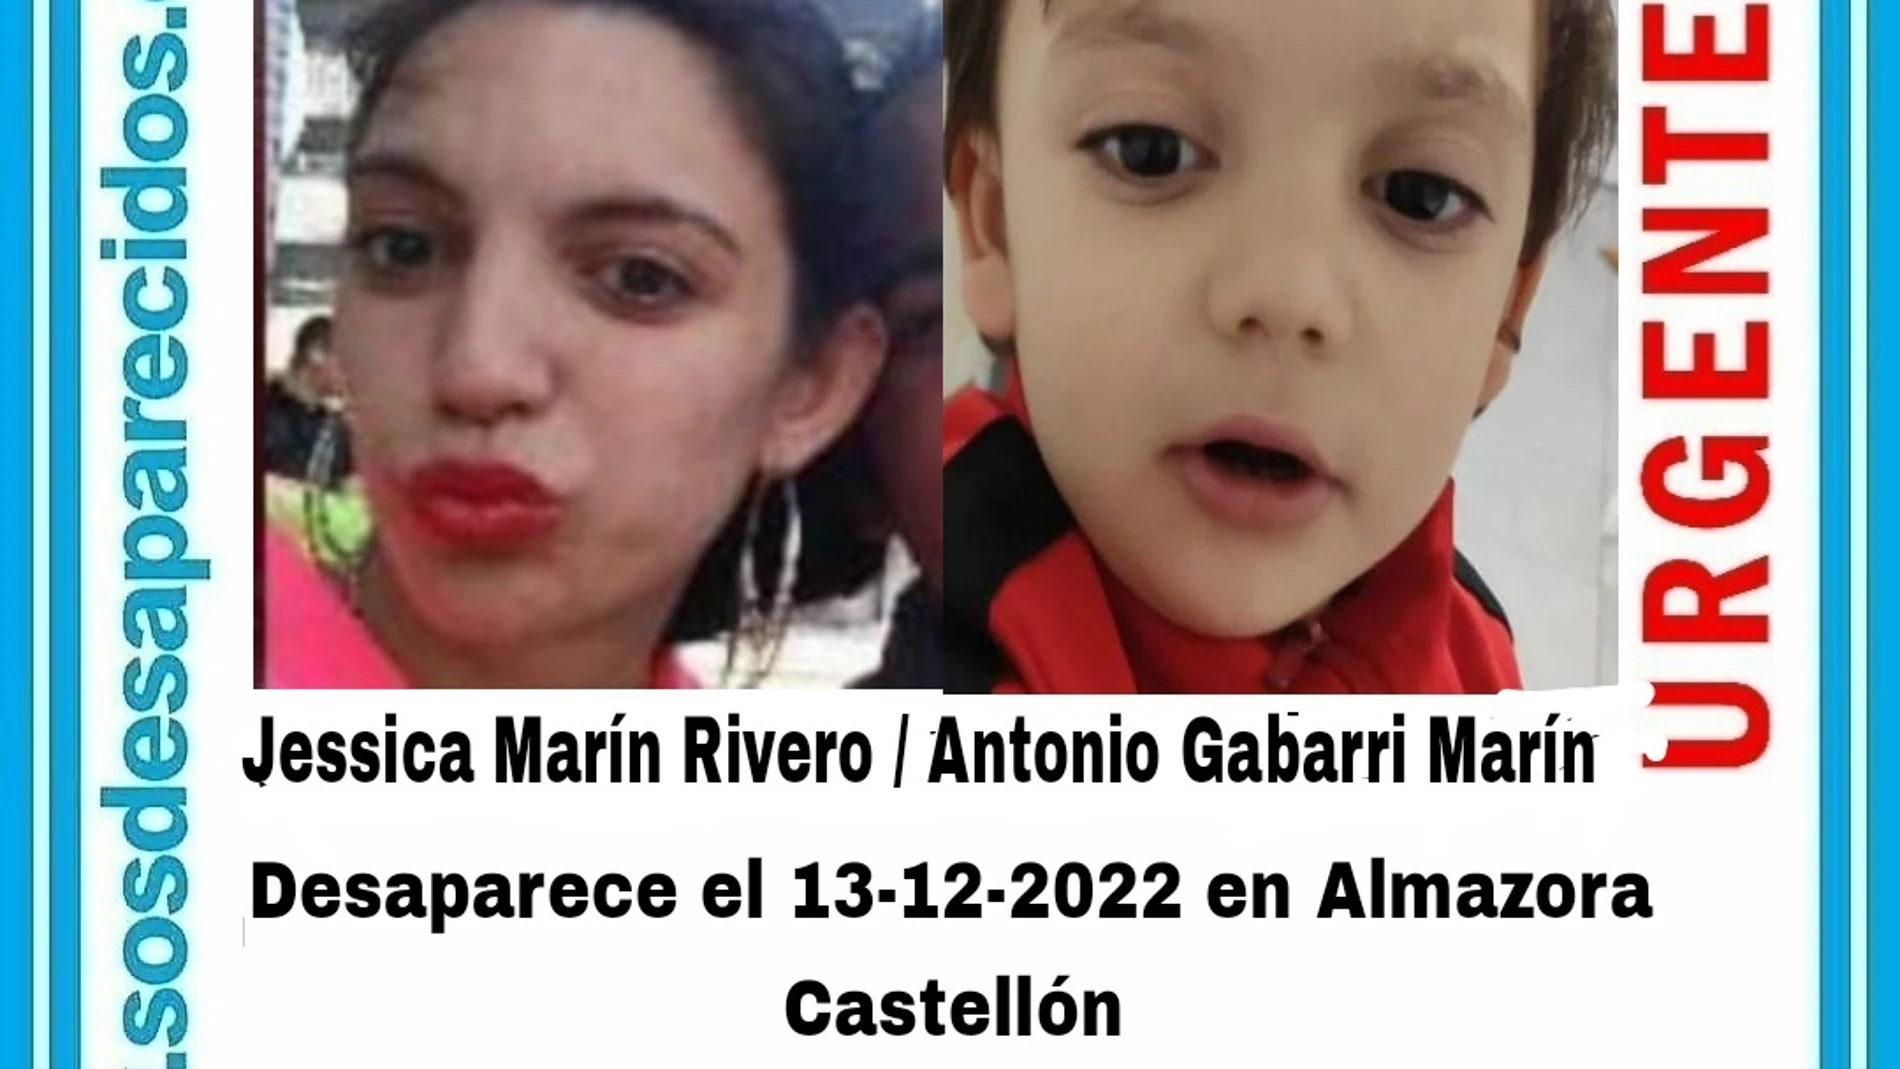 Cartel de Alerta Desaparecidos con las fotos de la madre y el hijo